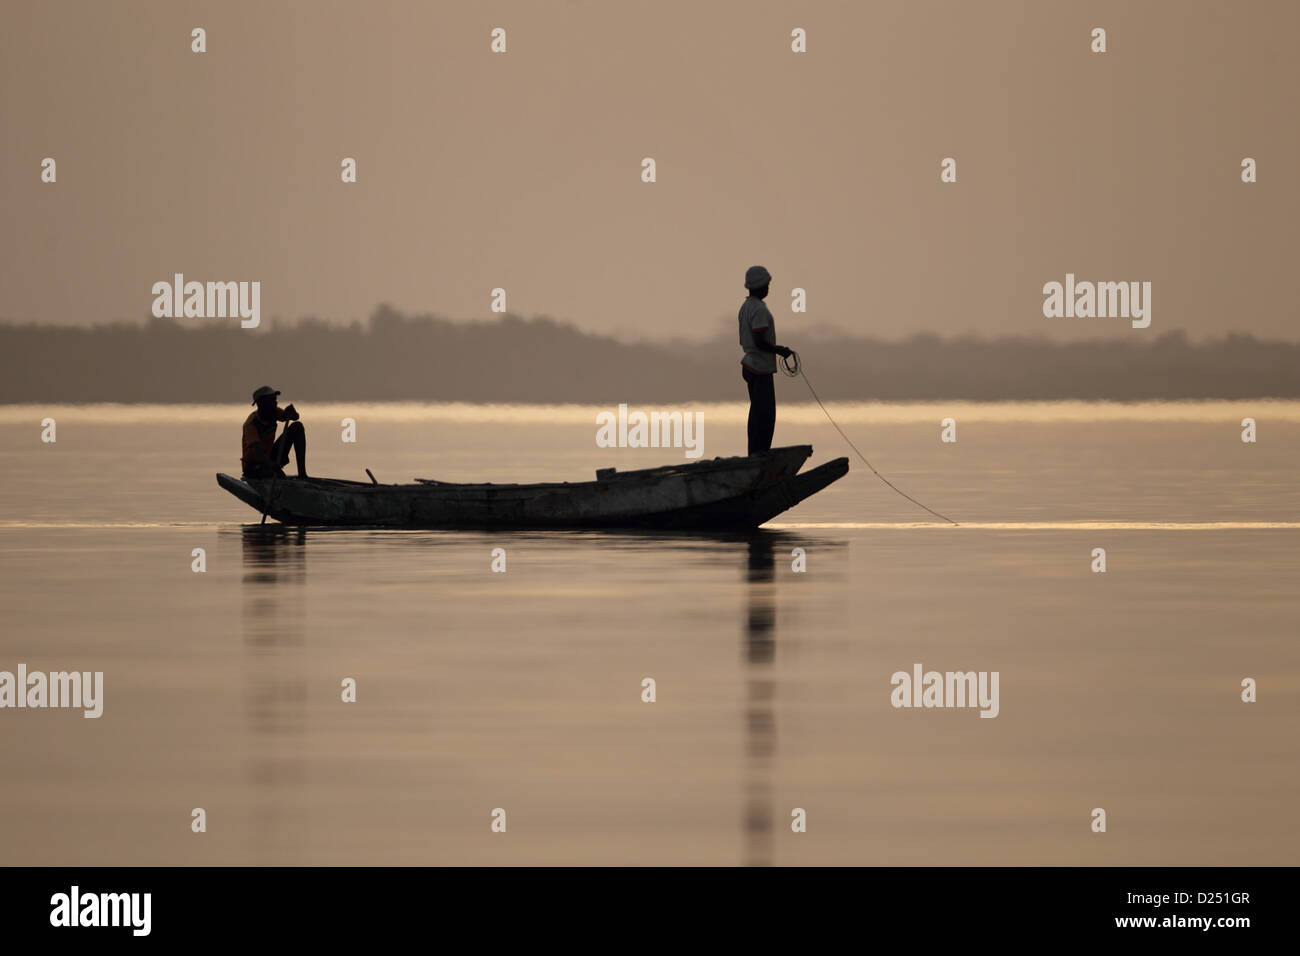 Les pêcheurs en bateau sur la rivière au coucher du soleil, le fleuve Gambie, Gambie Tendaba, février, Banque D'Images